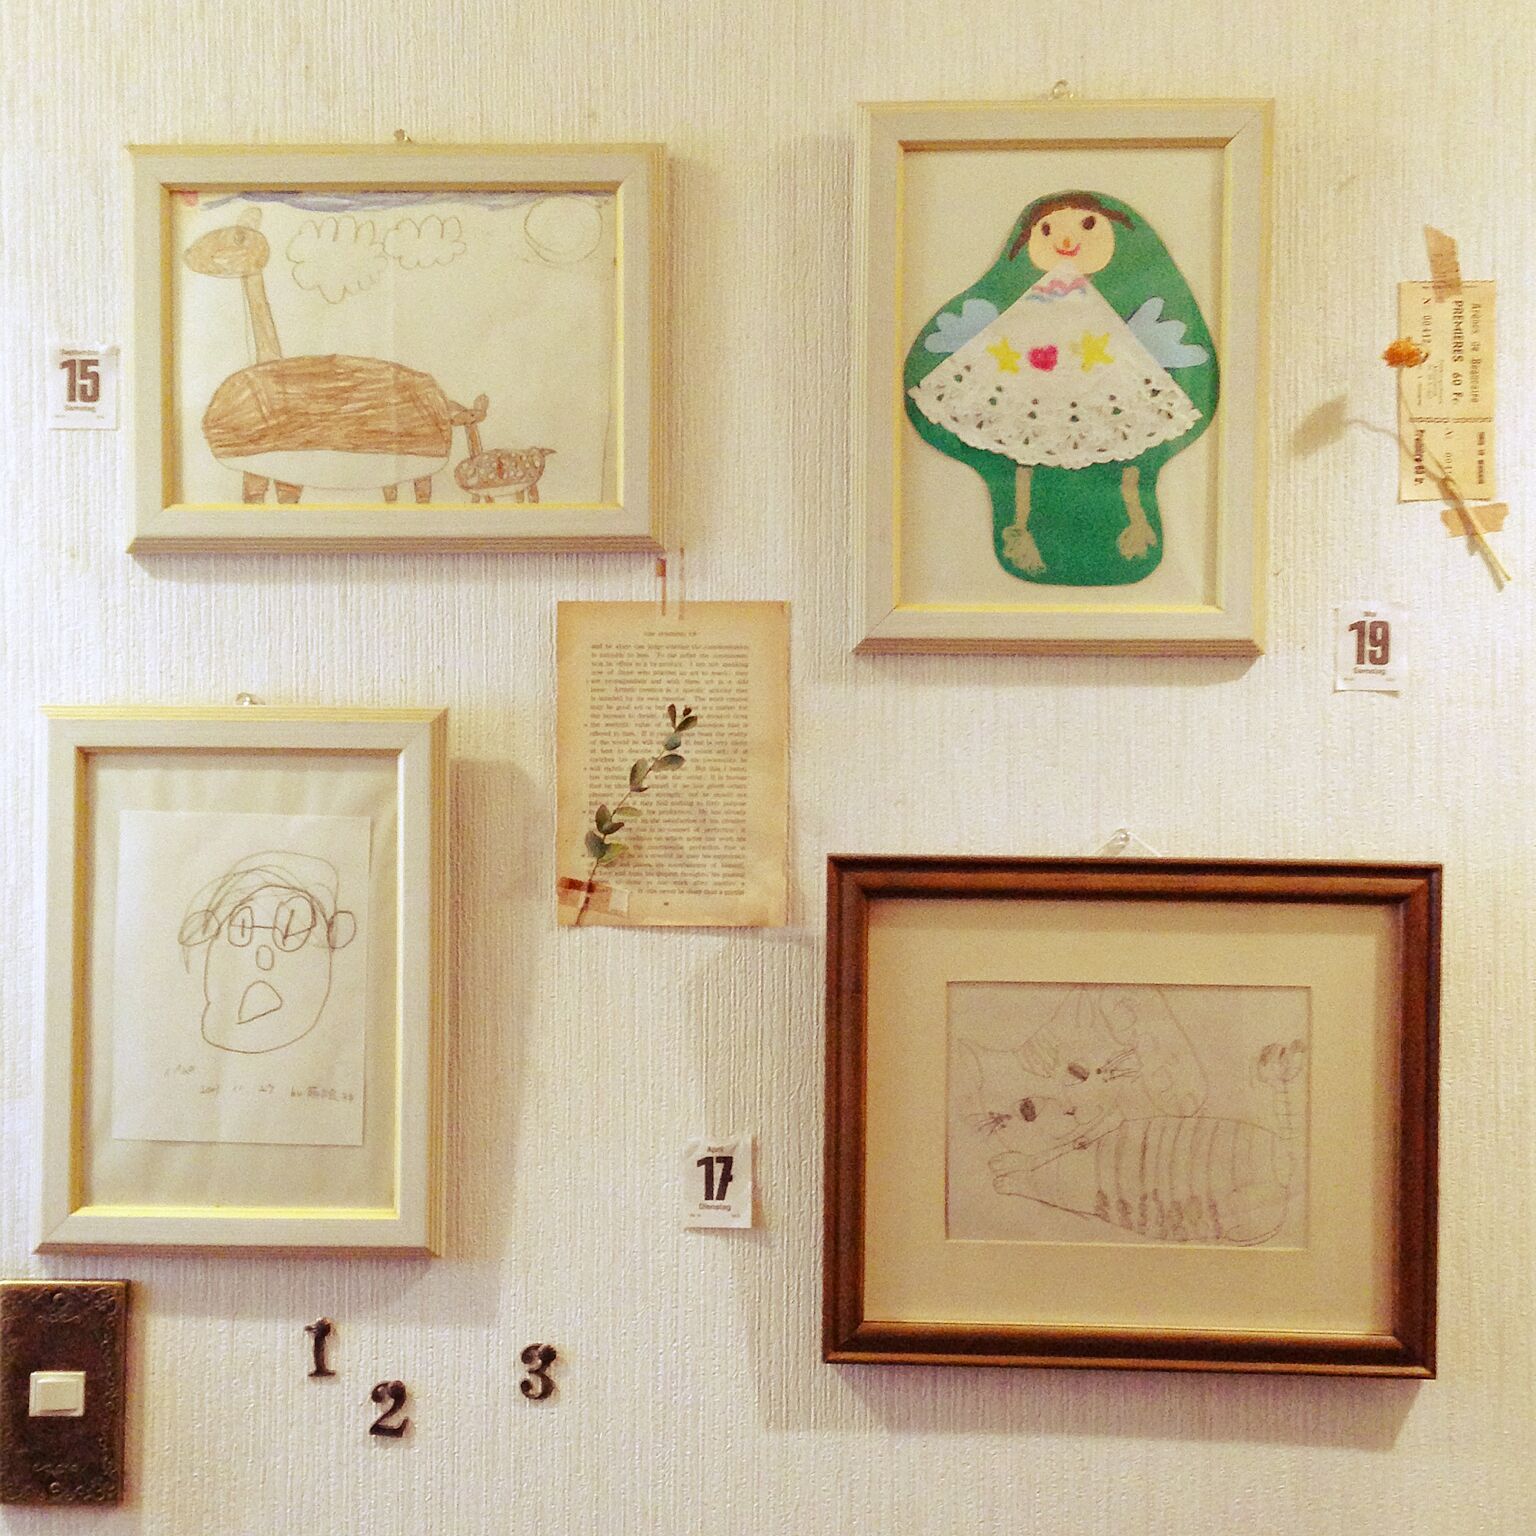 小さな芸術家さんも喜ぶ 子どもの絵の飾り方アイデア Roomclip Mag 暮らしとインテリアのwebマガジン